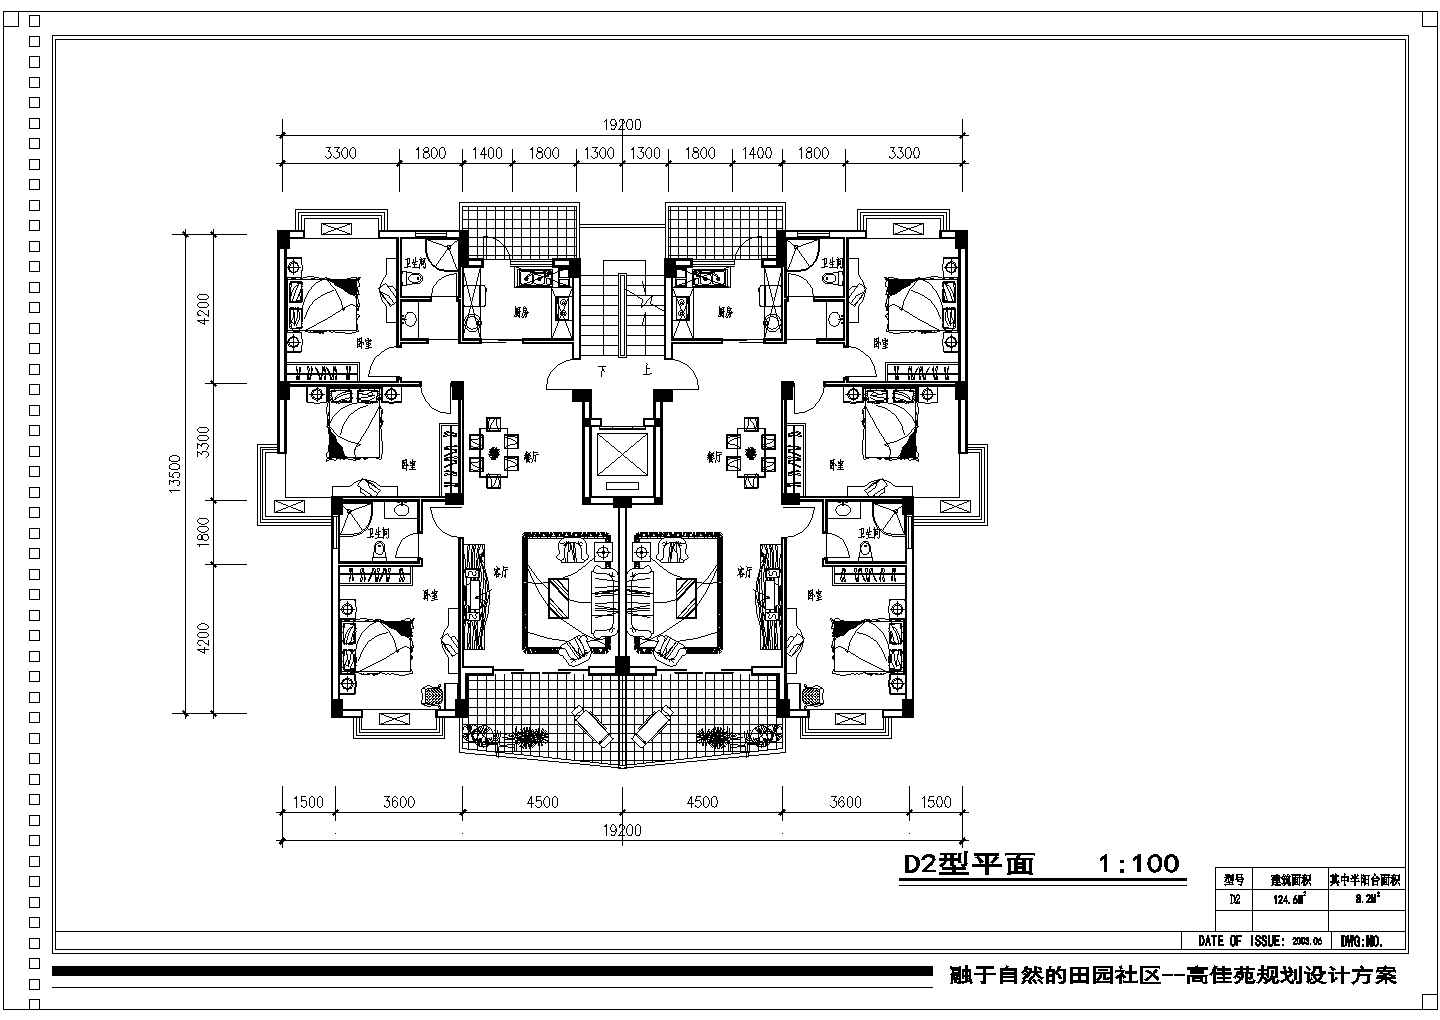 124平方米小高层一梯两户住宅户型设计cad图(含效果图)